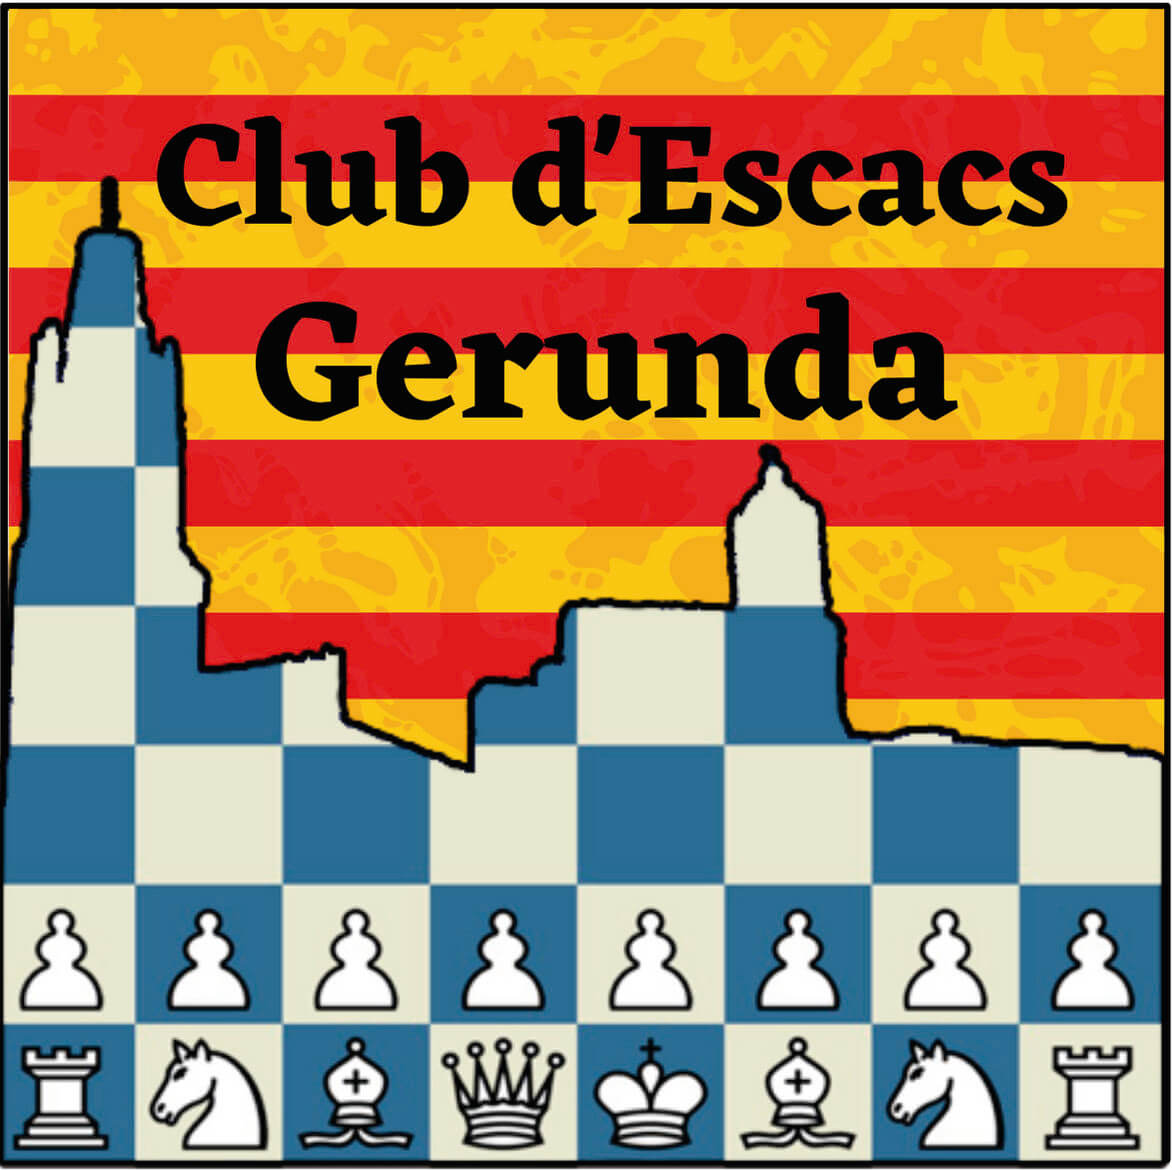 Escacs Gerunda